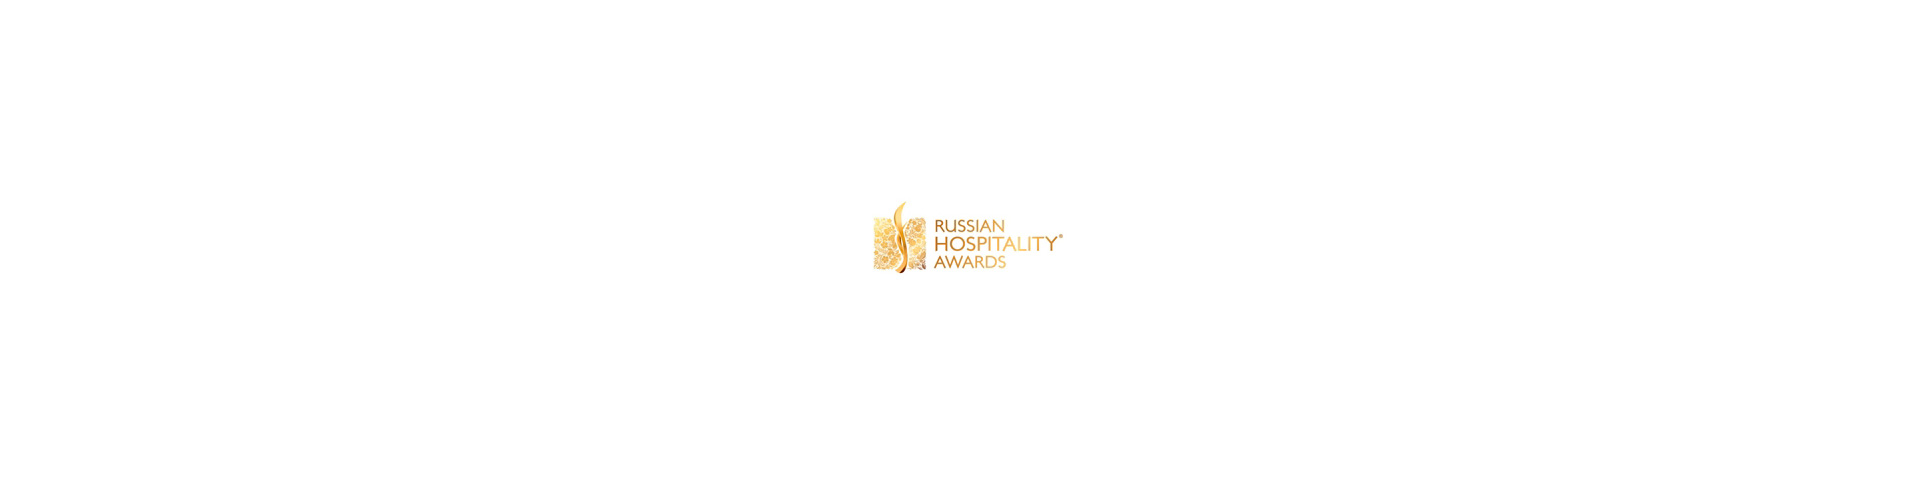 Крымский отель Mriya Resort & Spa - лучший курортный отель по версии Russian Hospitality Awards